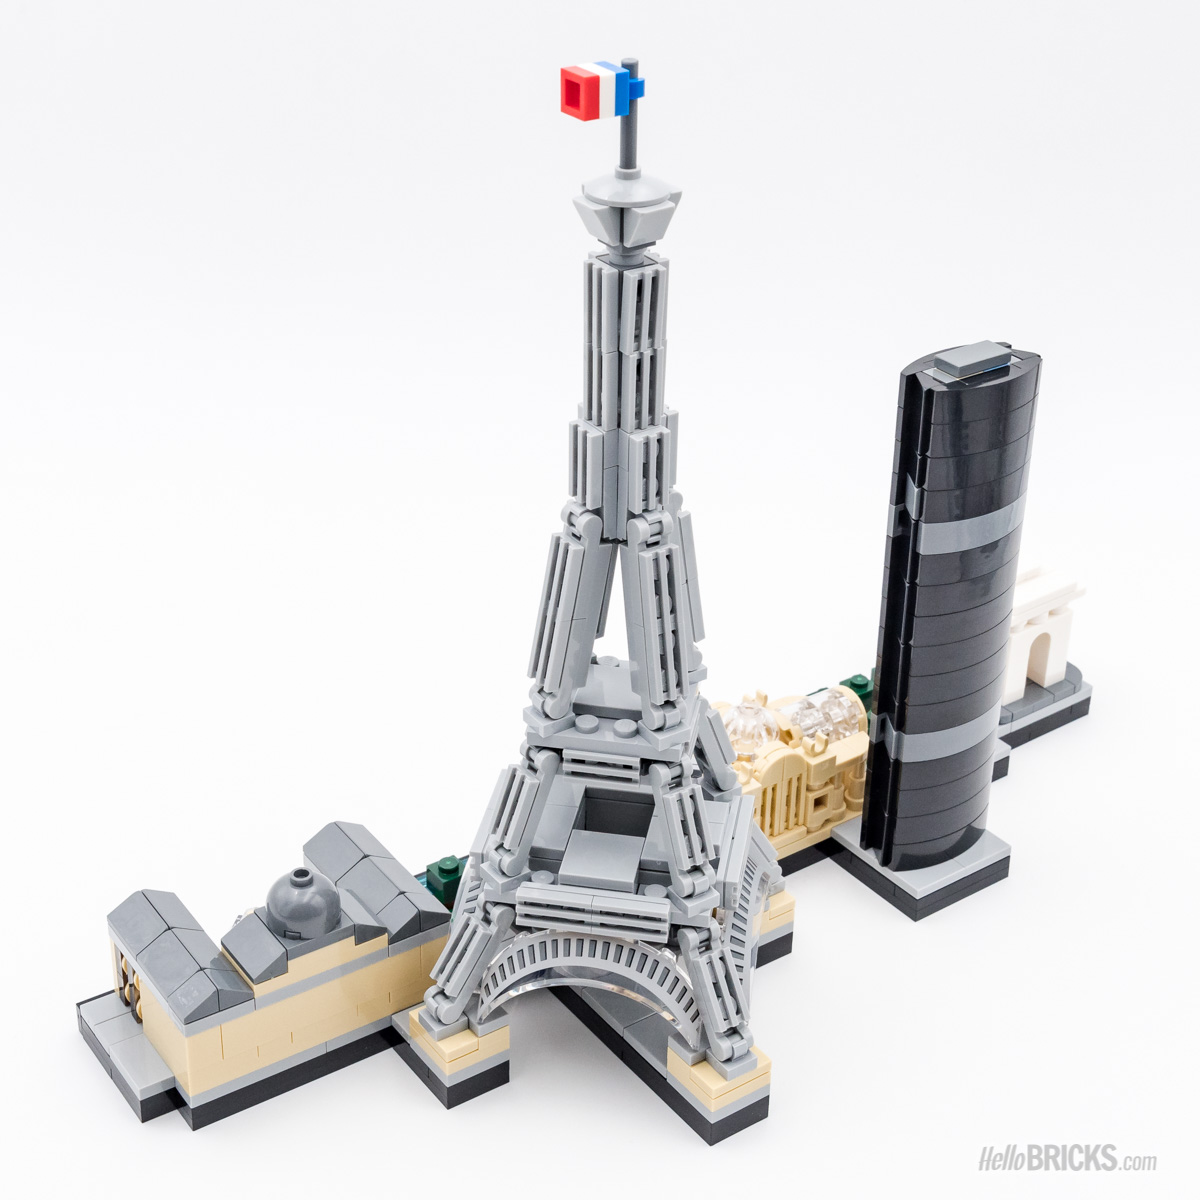 LEGO Architecture Paris 21044 review! 